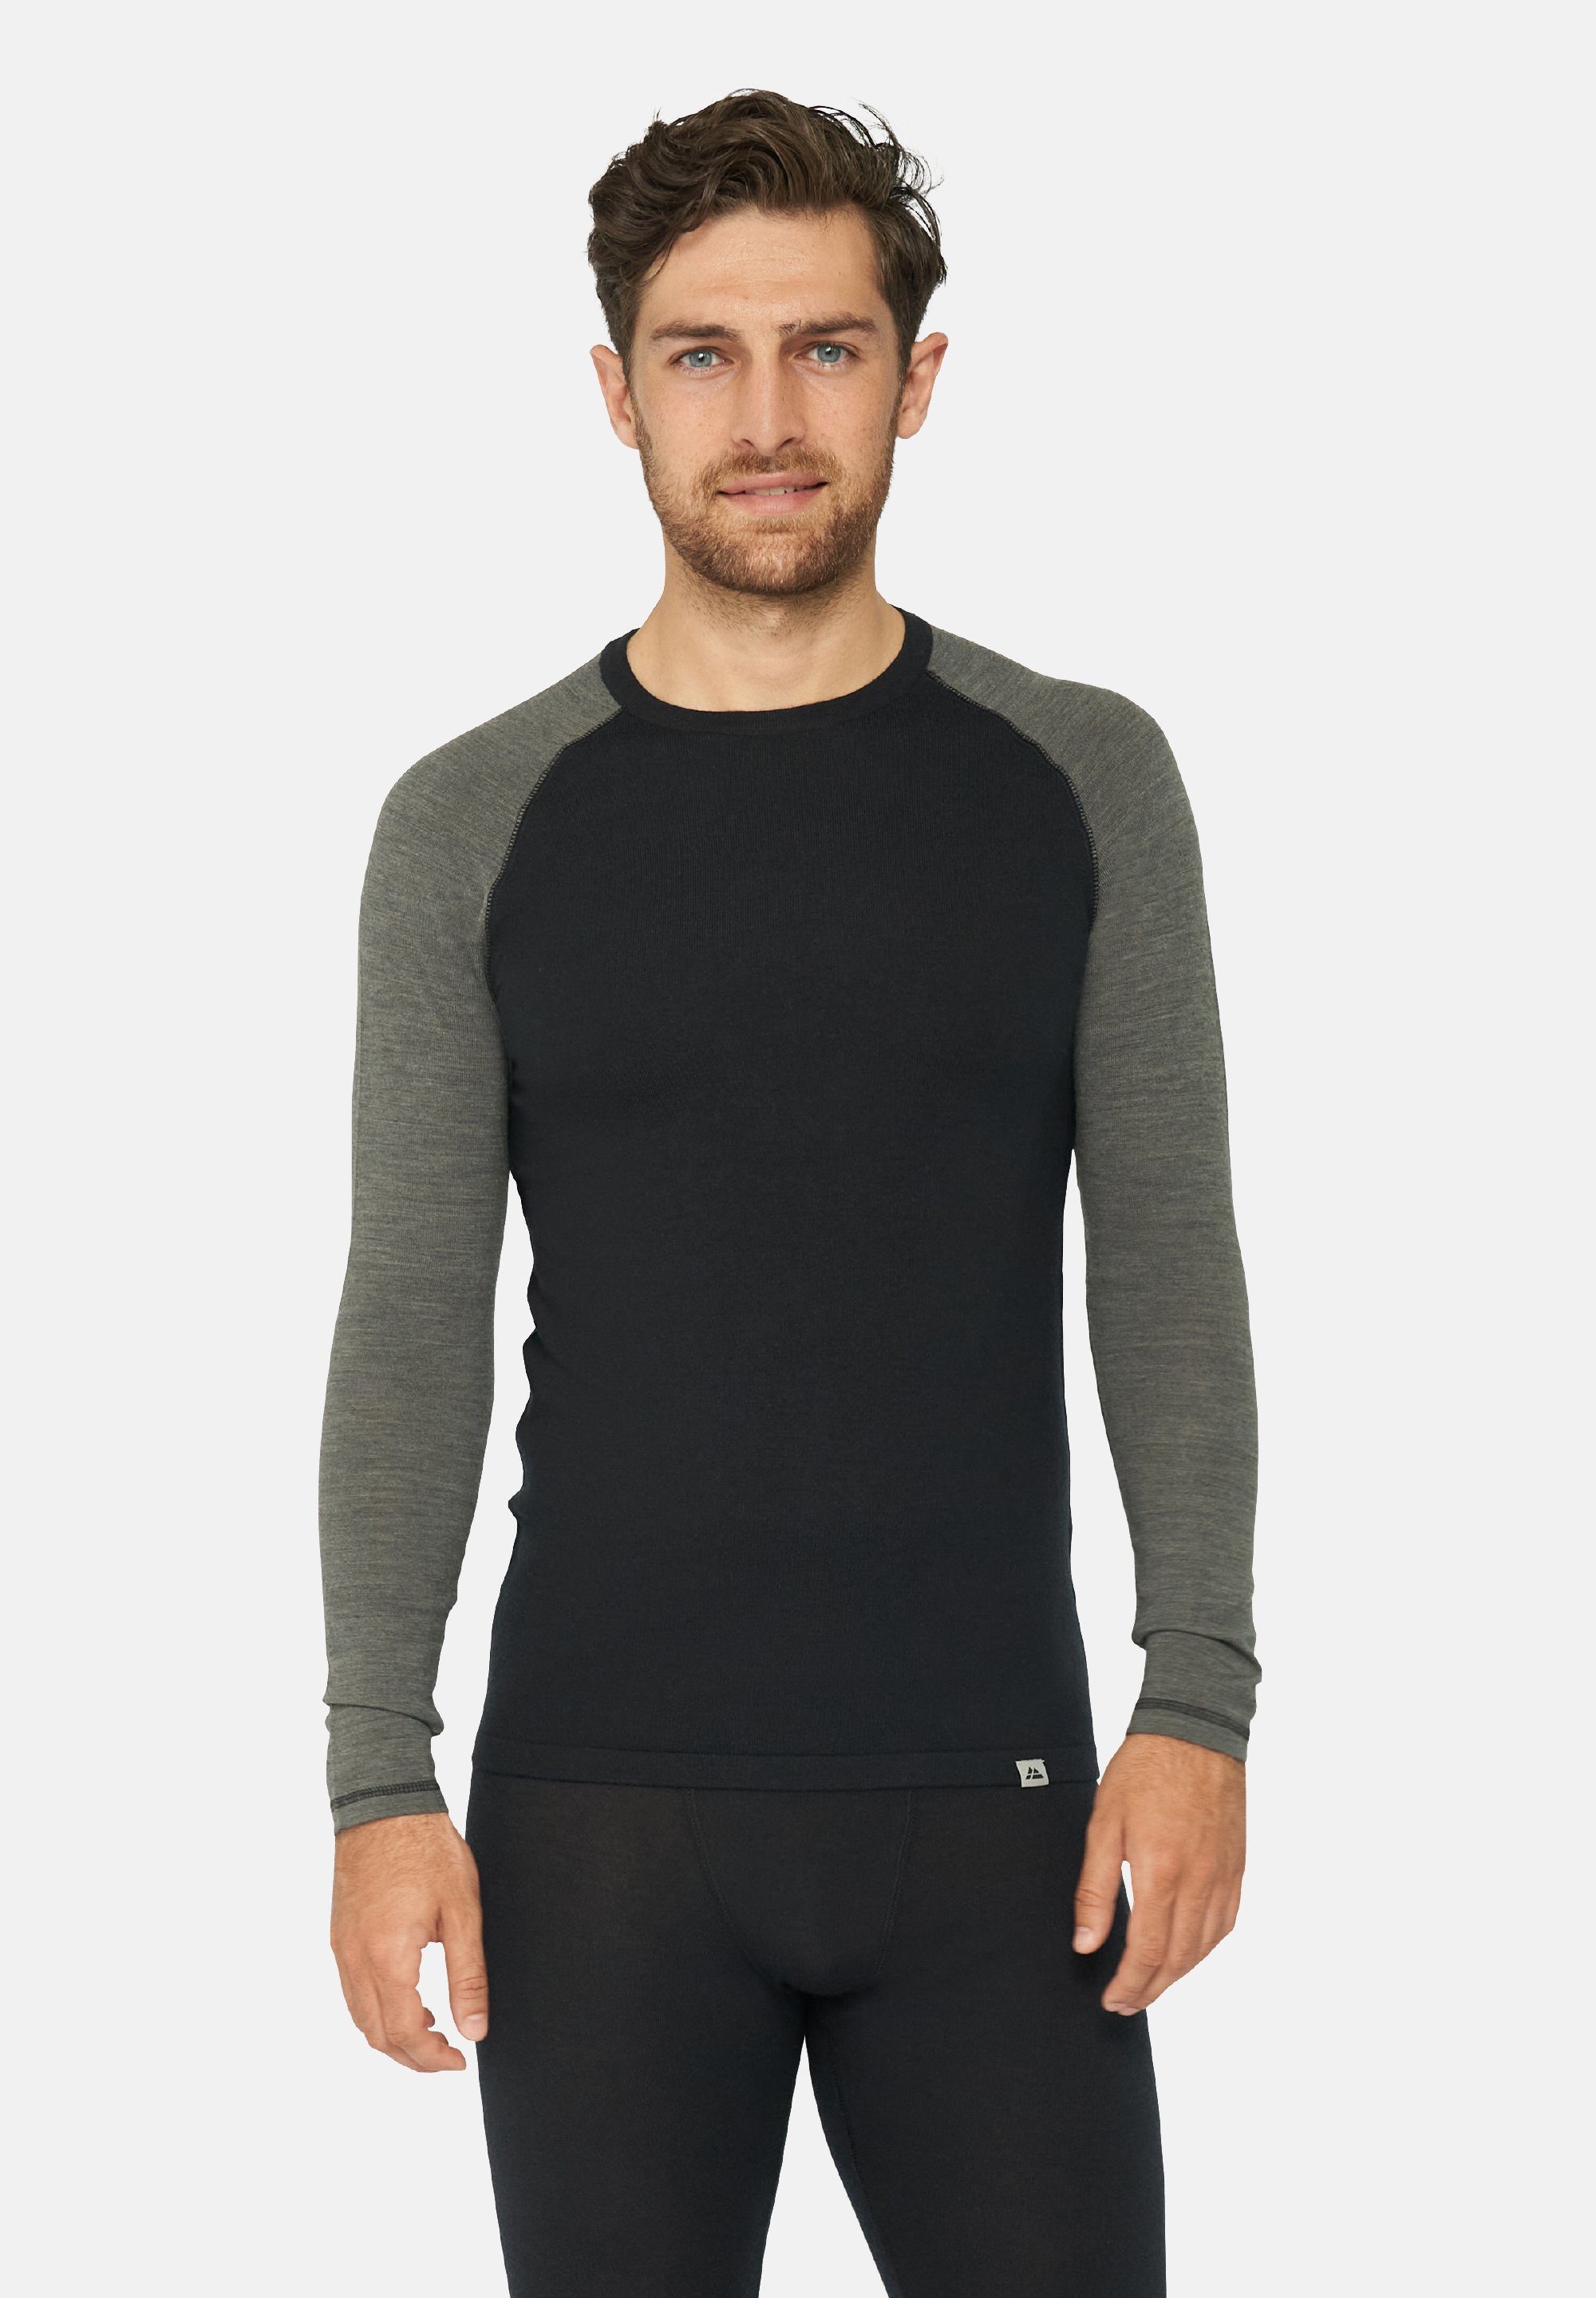 DANISH ENDURANCE Hose, & für Thermo-Unterwäsche Temperaturregulierend Langarm Shirt Set black/dark Herren Thermounterhemd grey Merino